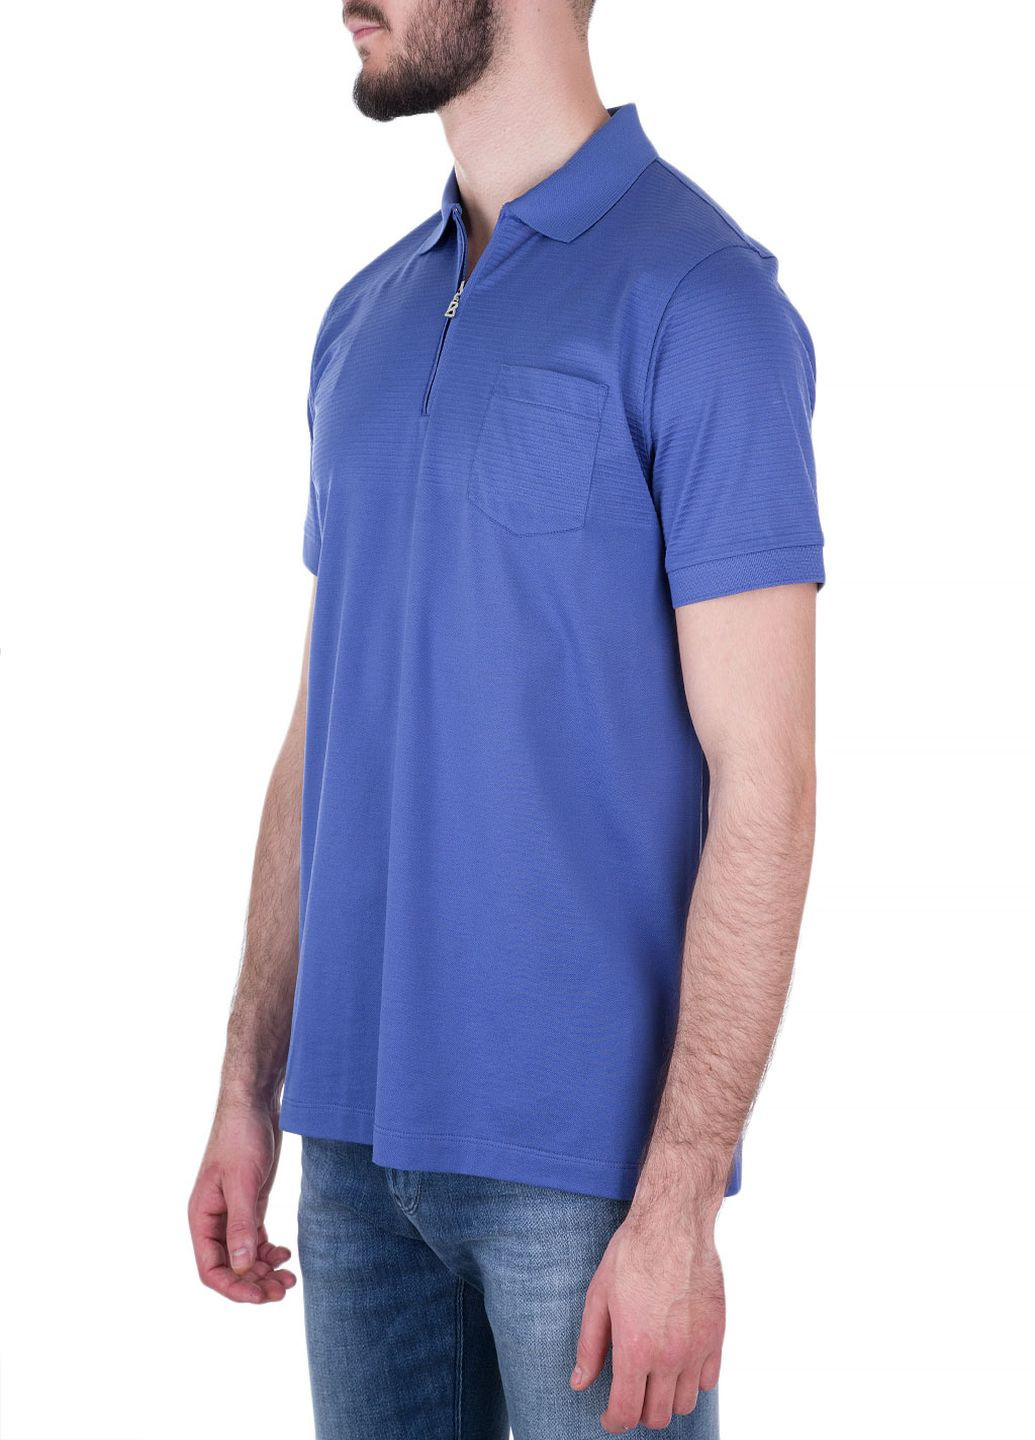 Синяя футболка-поло для мужчин Bogner однотонная